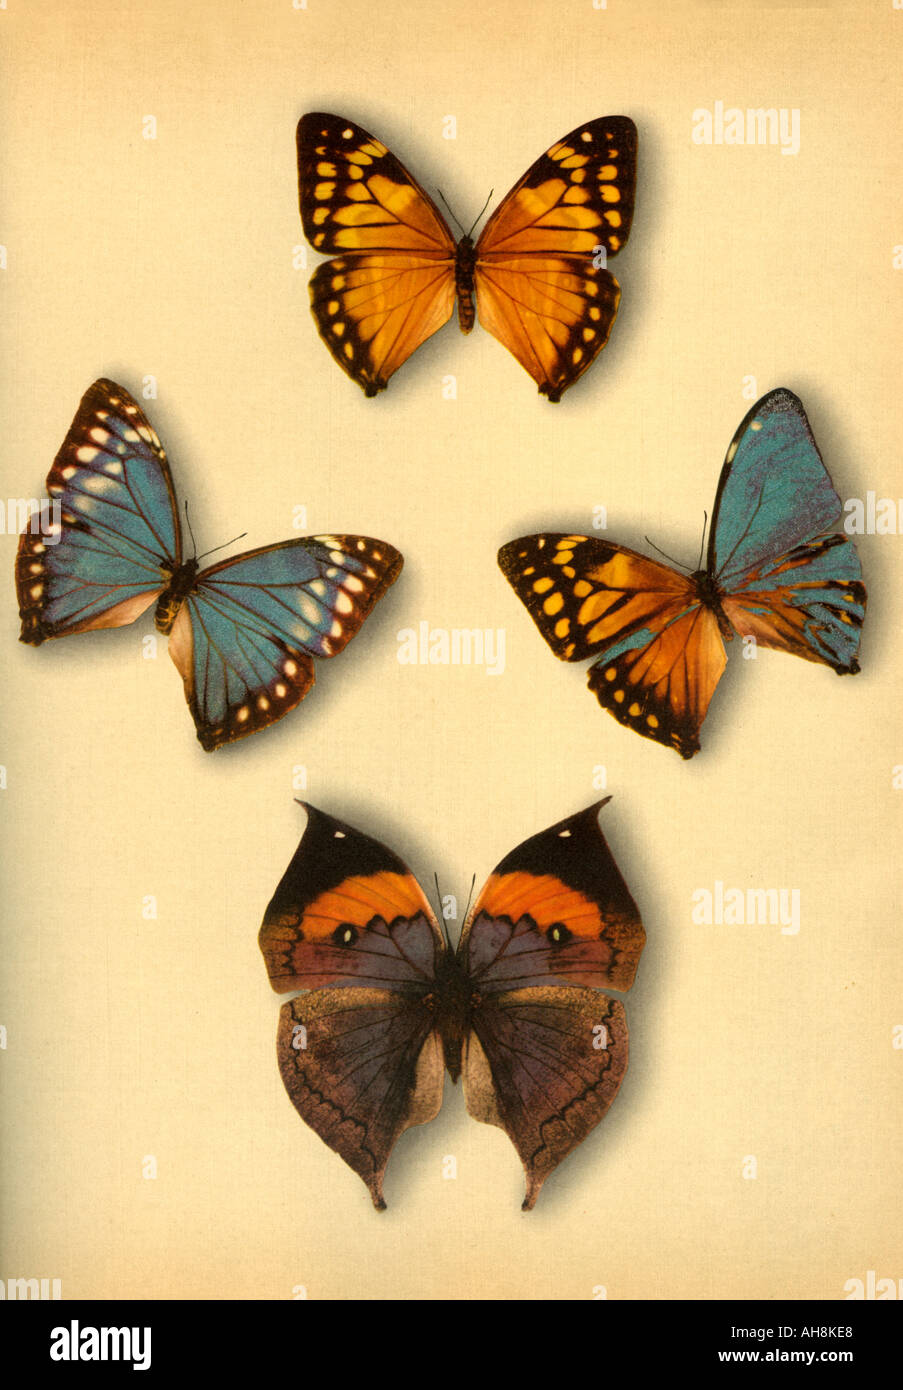 AAD71480 artistique quatre papillons papillons colorés Oakleaf Banque D'Images